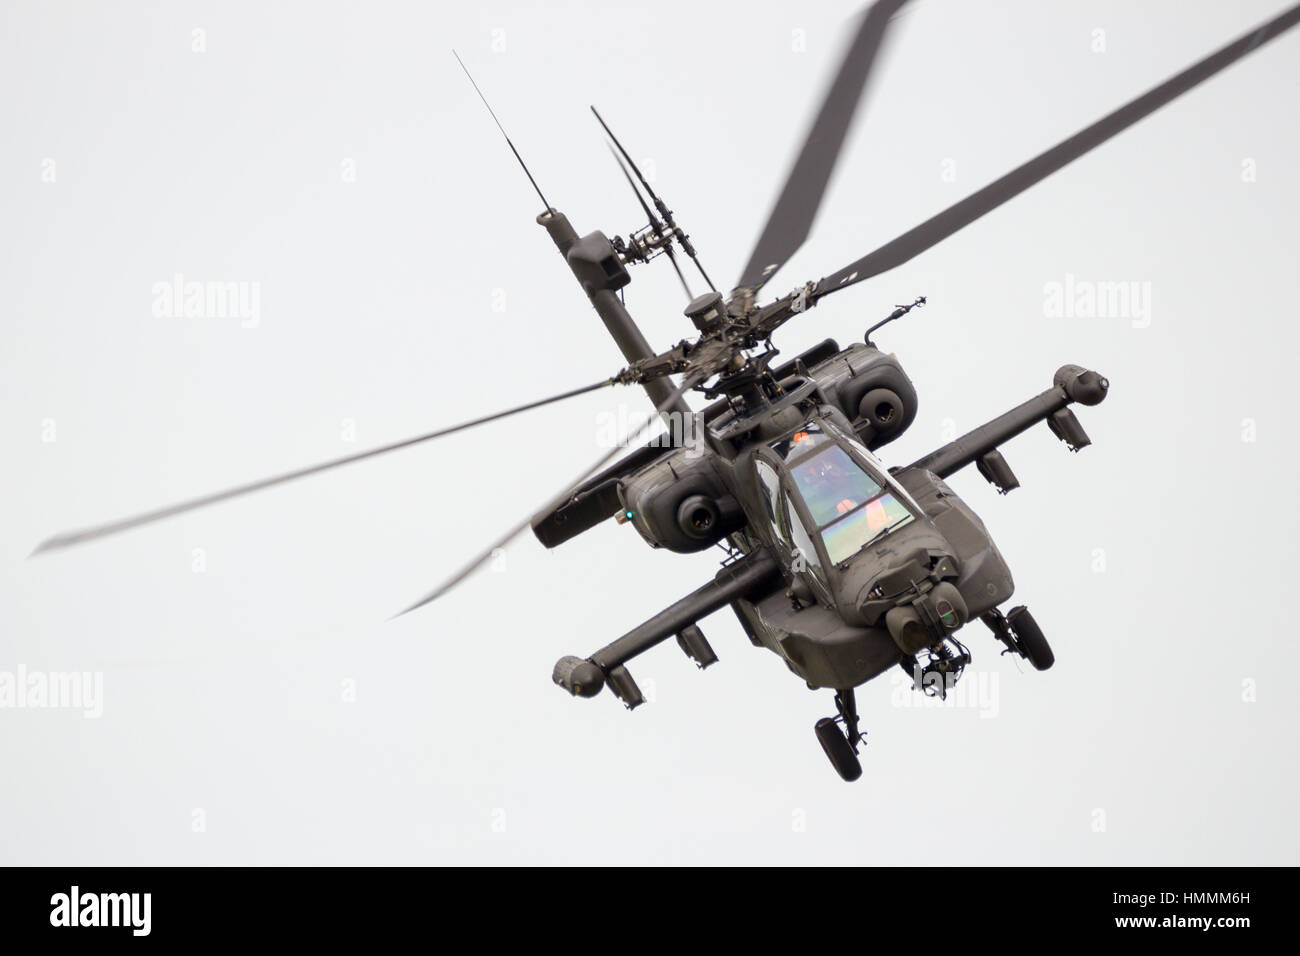 LEEUWARDEN, Pays-Bas - JUN 10, 2016 : Boeing AH-64 Apache hélicoptère volant attaque une démo au cours de la Royal Netherlands Air Force Jours Banque D'Images